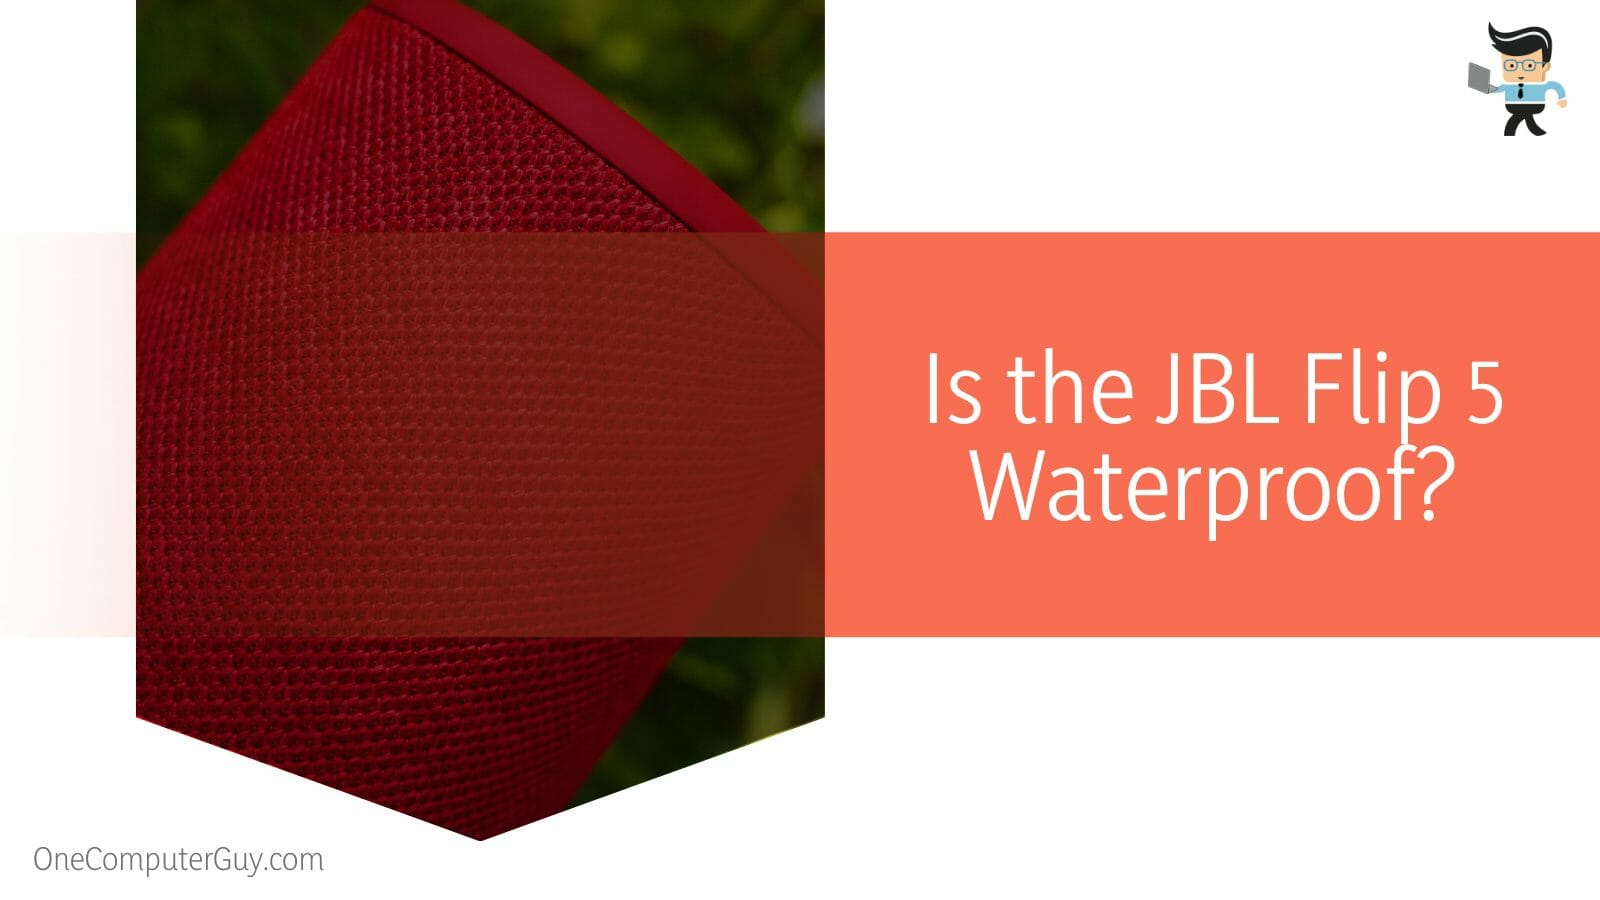 JBL Flip 5 Waterproof